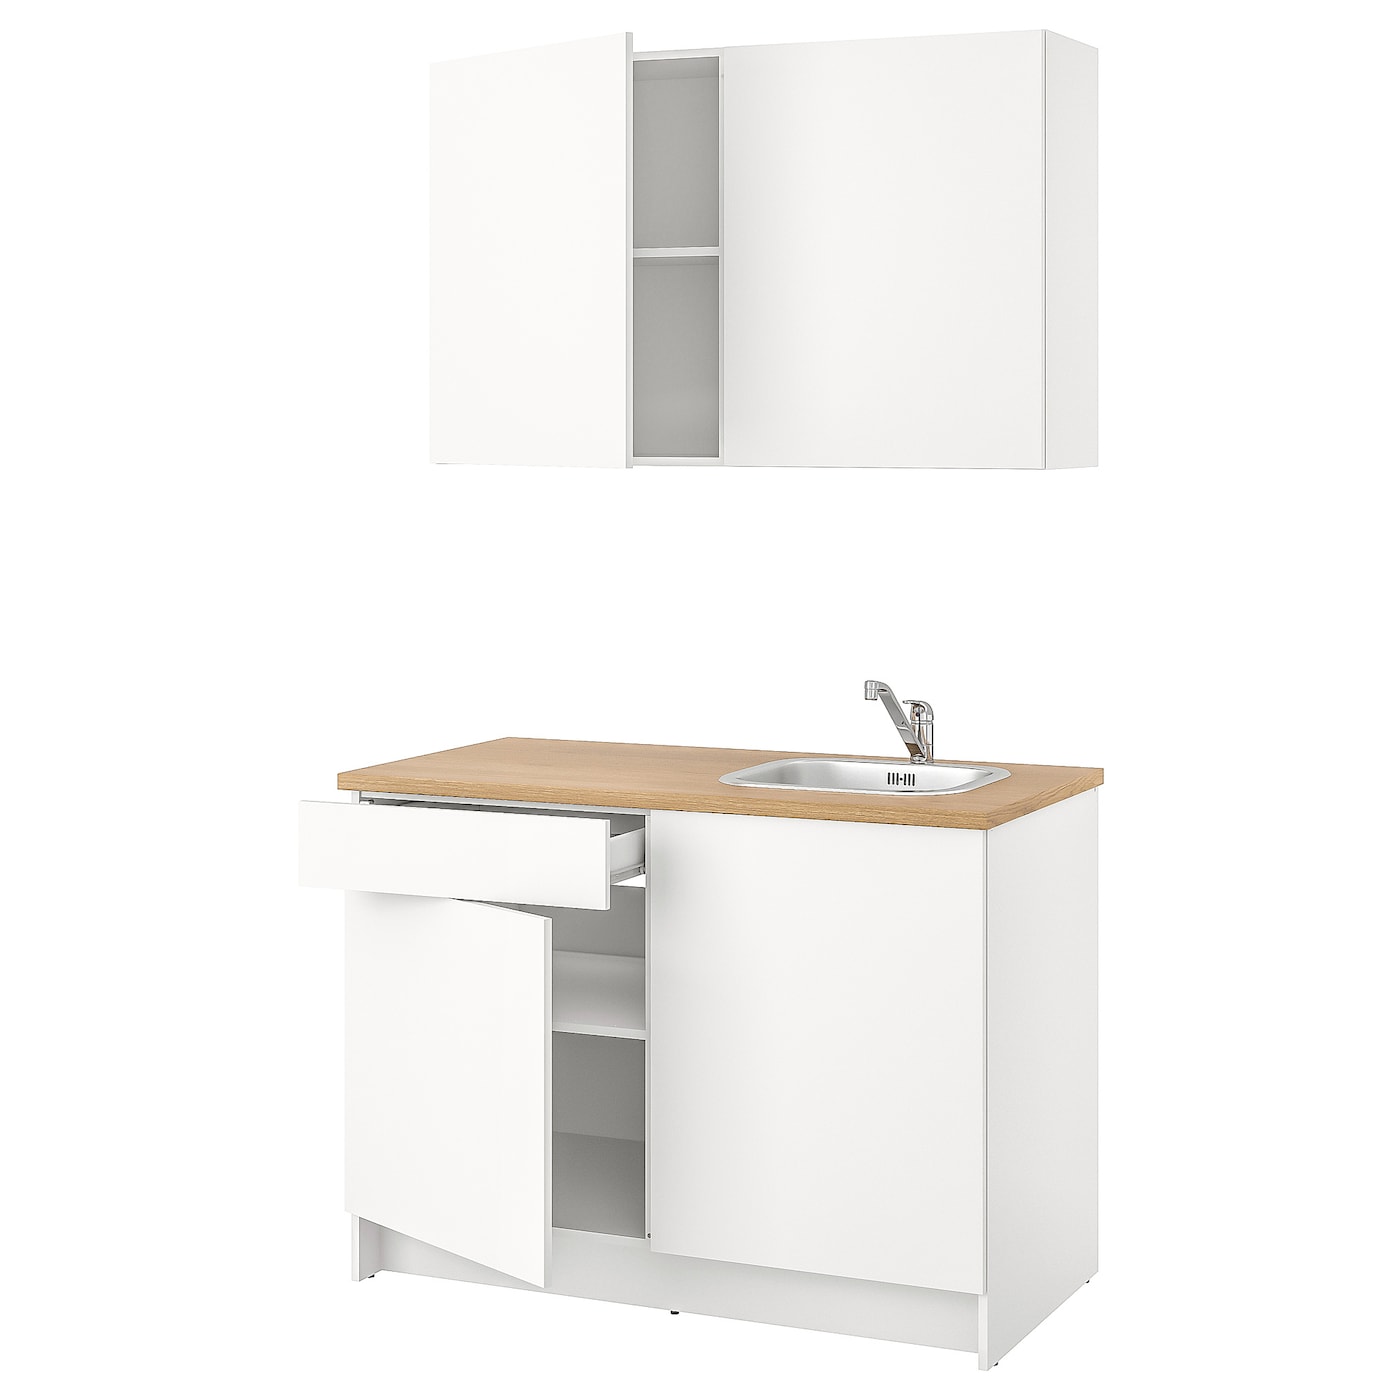 Кухонная комбинация для хранения вещей - KNOXHULT IKEA/ КНОКСХУЛЬТ ИКЕА, 120х61х220 см, бежевый/белый